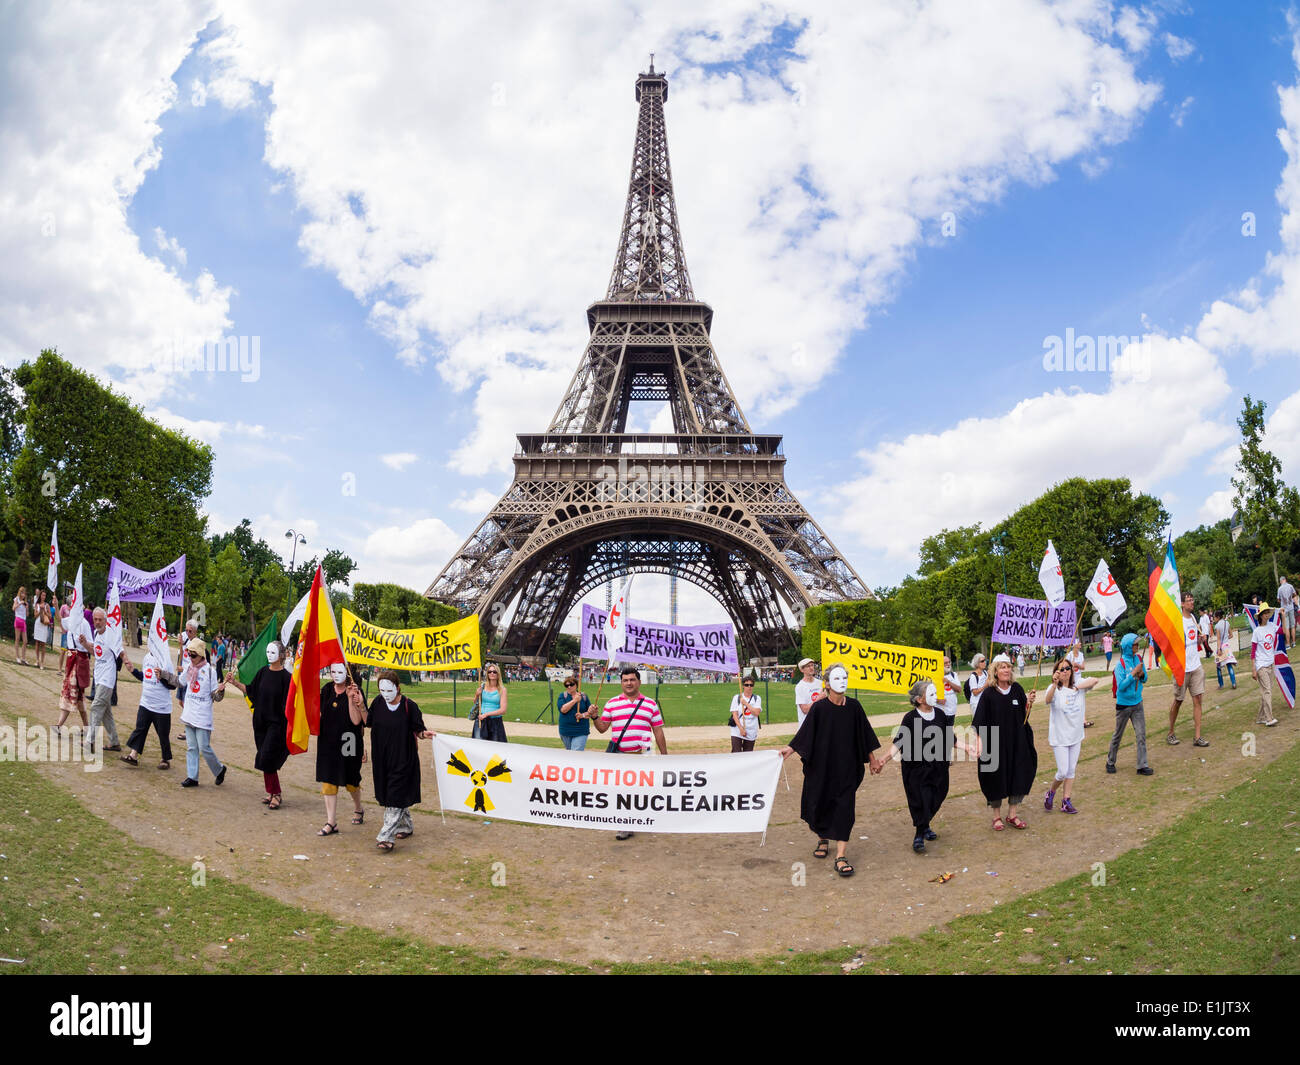 Friedensaktivisten aus verschiedenen Ländern zeigen sich für die Abschaffung von Atomwaffen auf dem Eiffelturm in Paris. Stockfoto